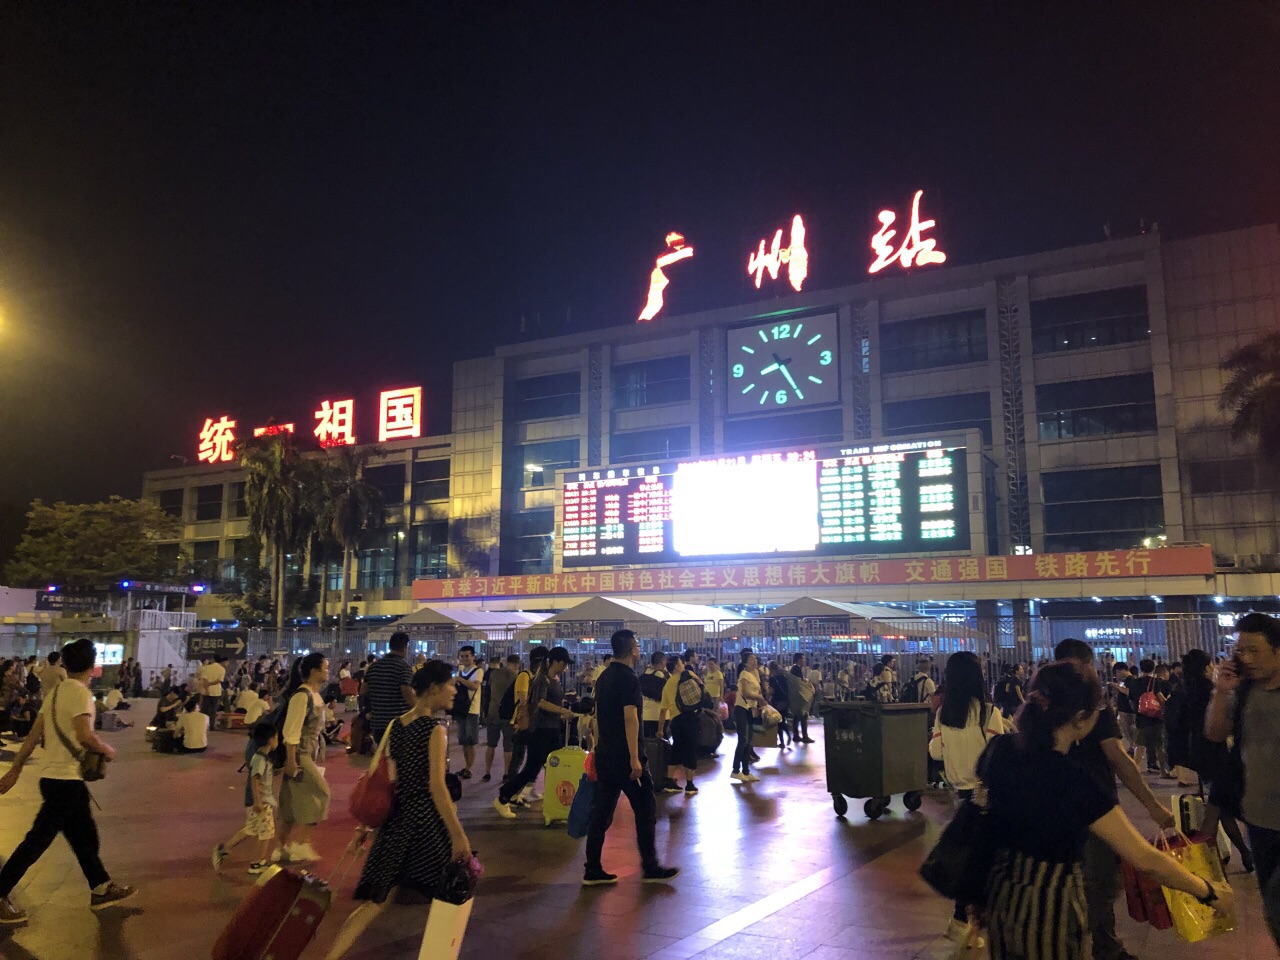 广州火车站_广州火车站最新消息,新闻,图片,视频_聚合阅读_新浪网